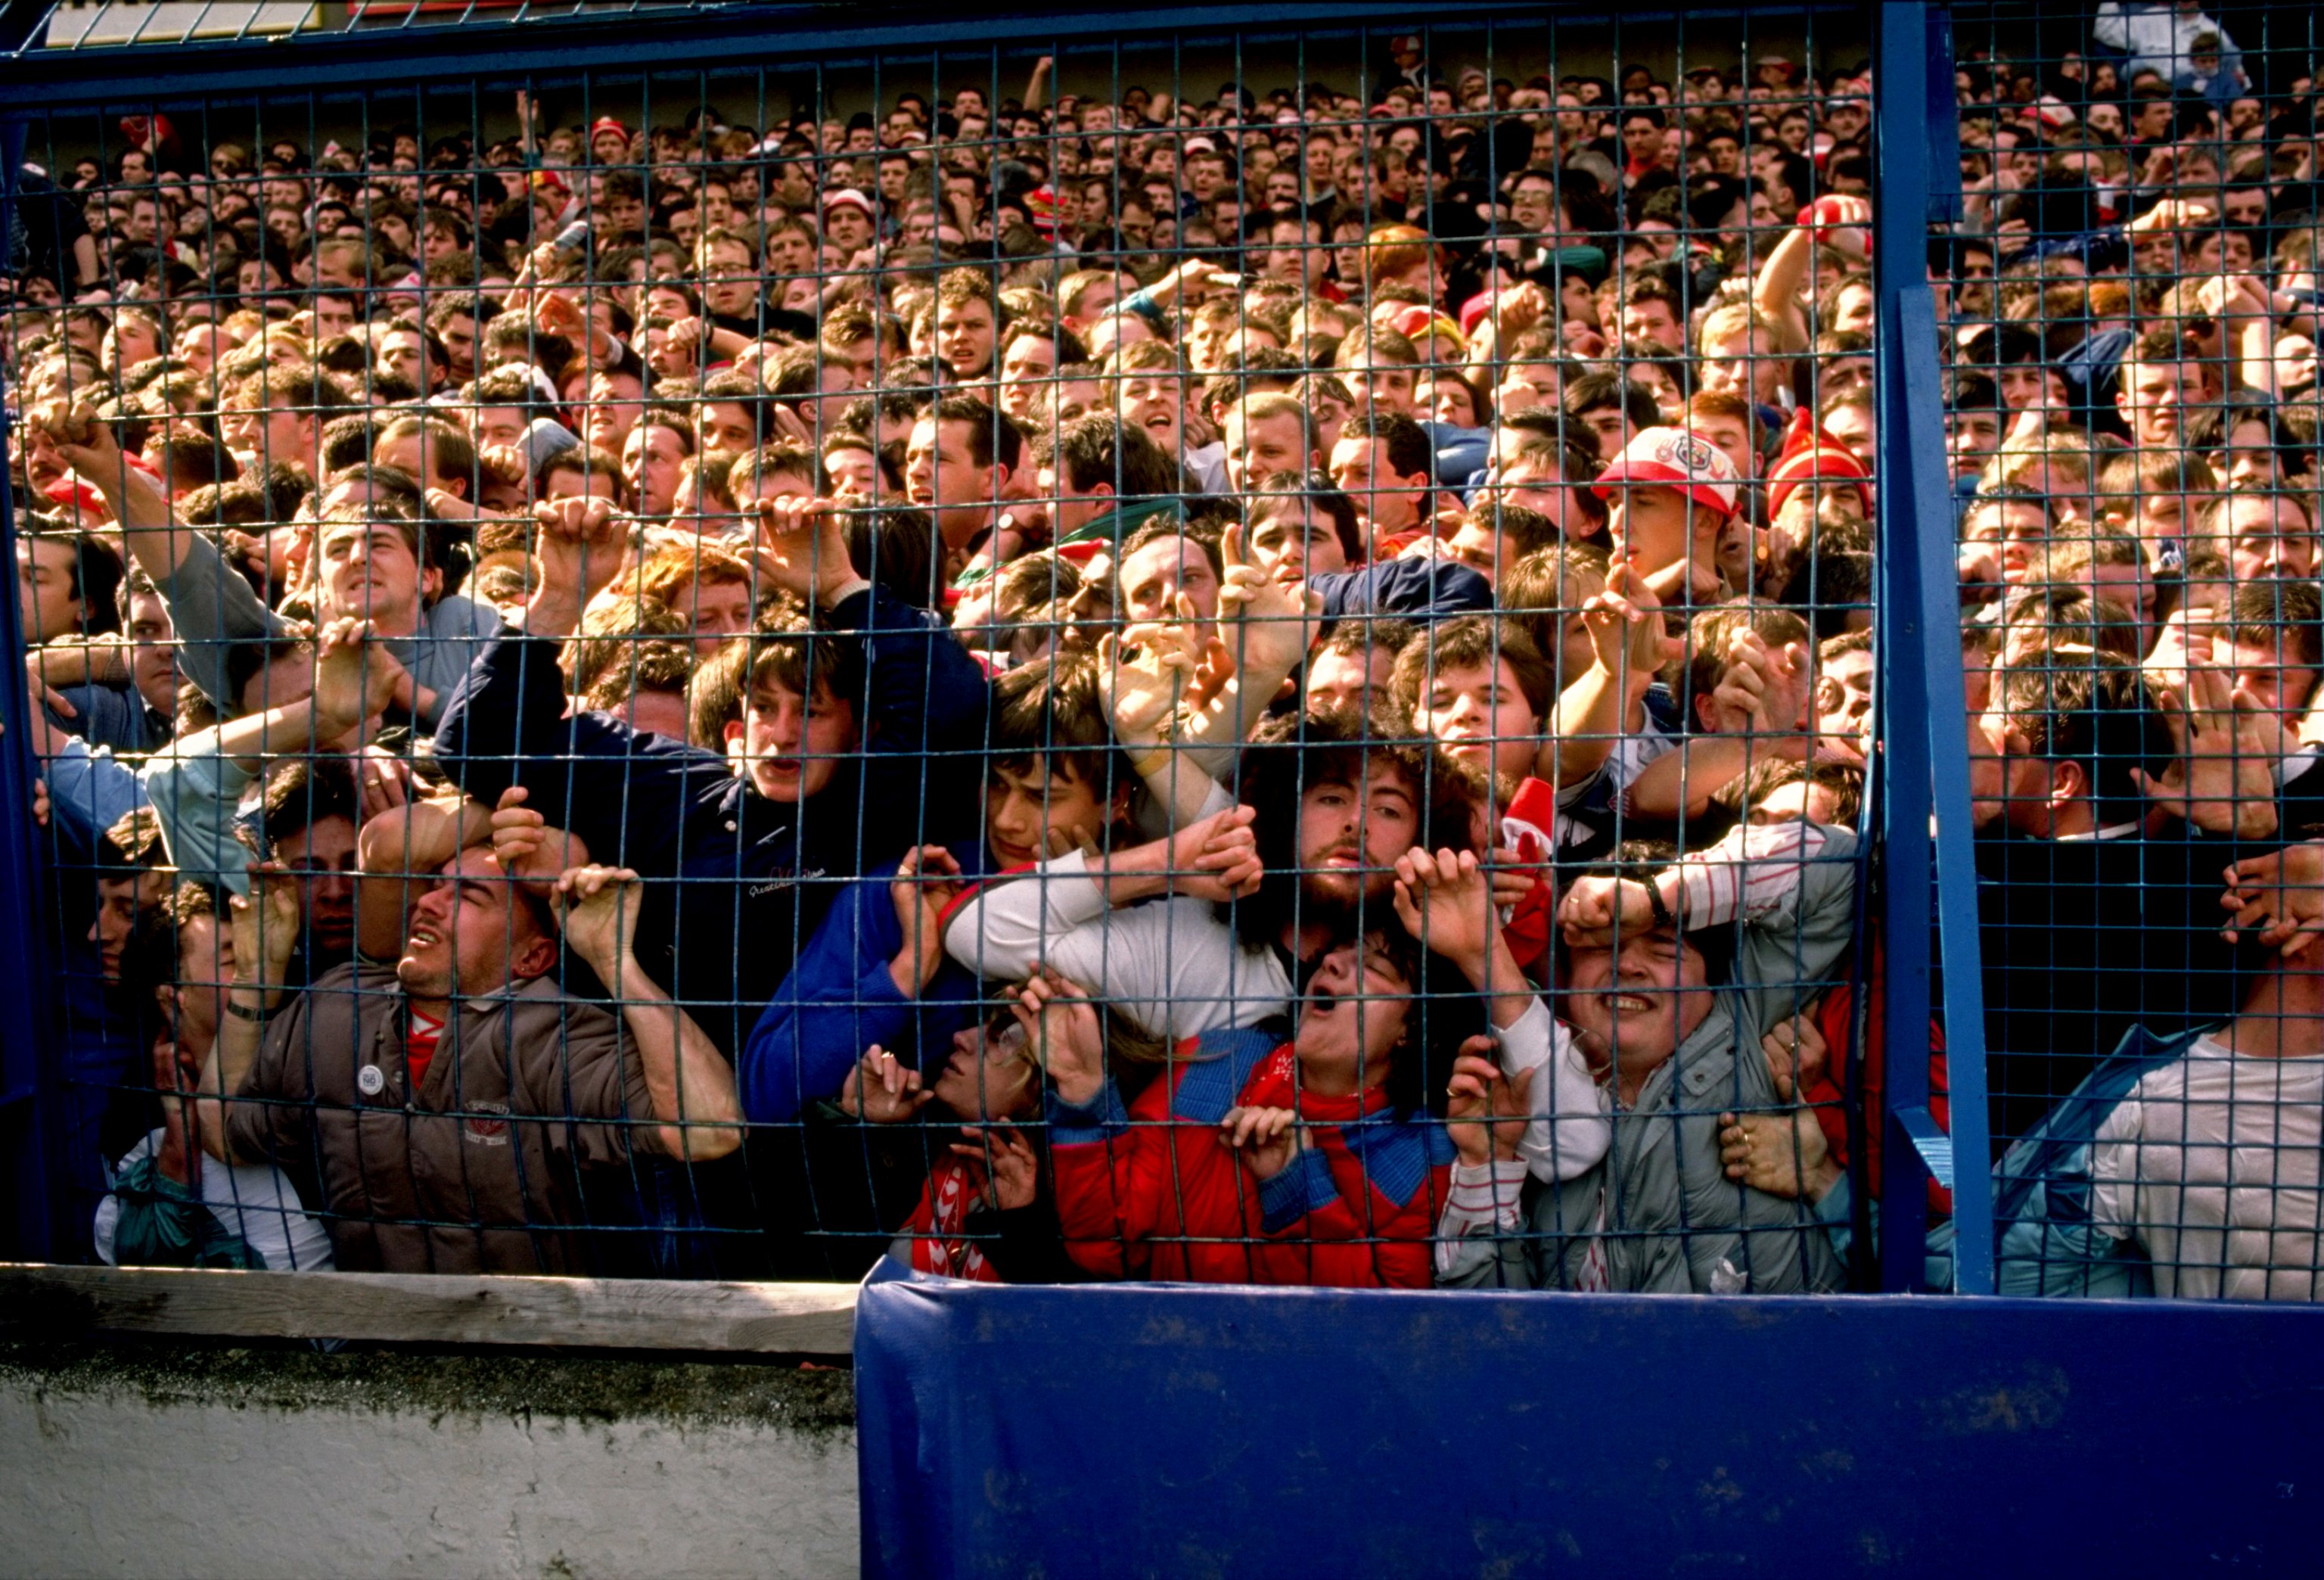 Запад в панике. Стадион Хиллсборо в Шеффилде, 1989. Стадион Хиллсборо Шеффилд. Давка на стадионе Хиллсборо в Шеффилде 1989. 15 Апреля 1989 года на стадионе Хиллсборо в Англии.